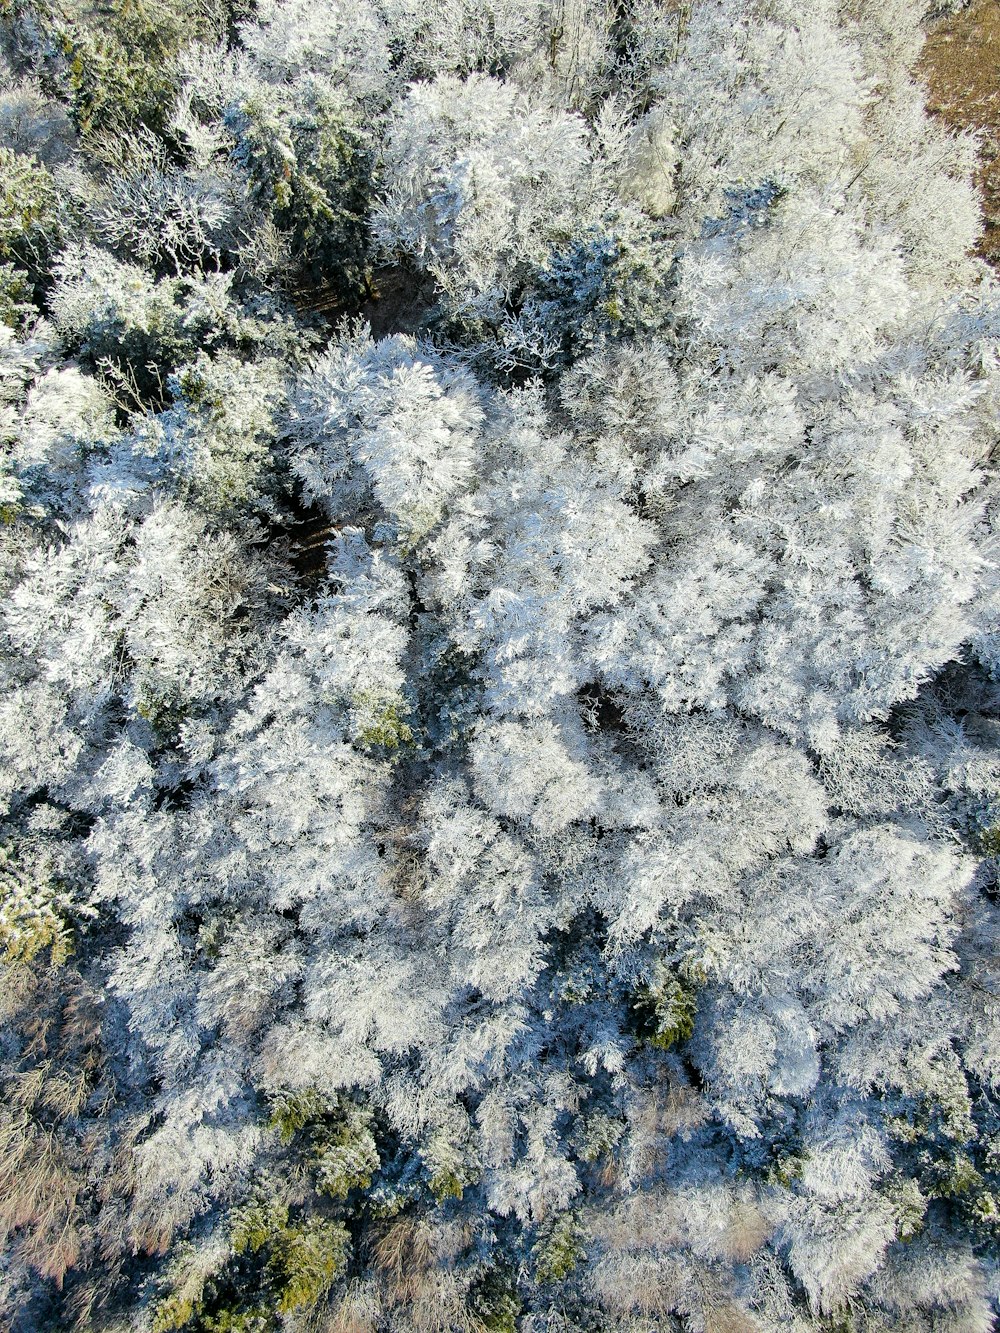 un groupe d’arbres recouverts de neige à côté d’une forêt